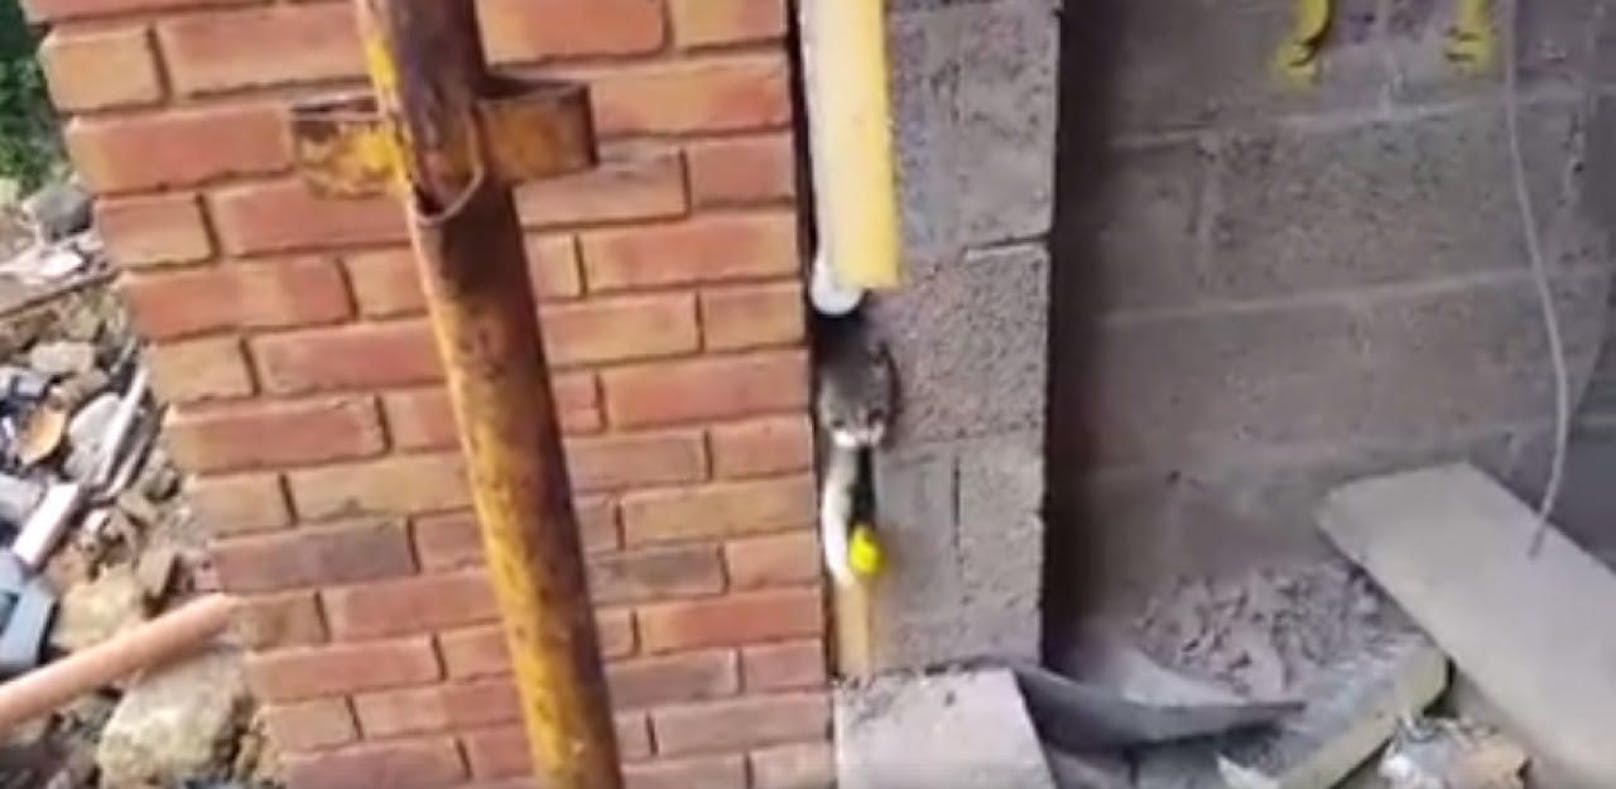 Katze steckte zwischen Hausmauern fest - gerettet